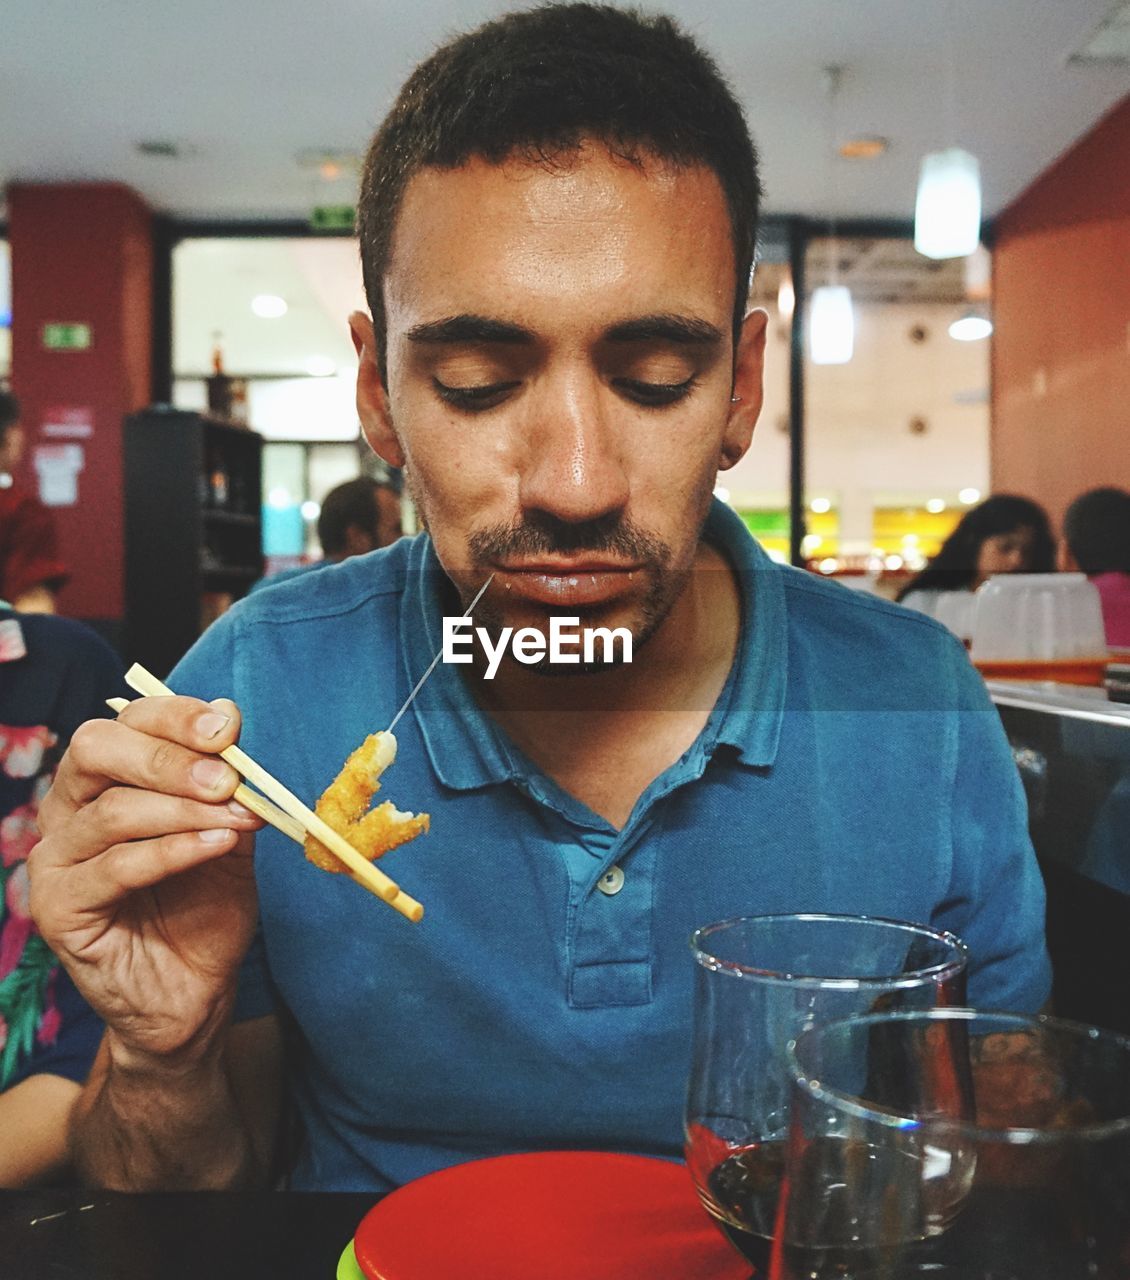 Man eating